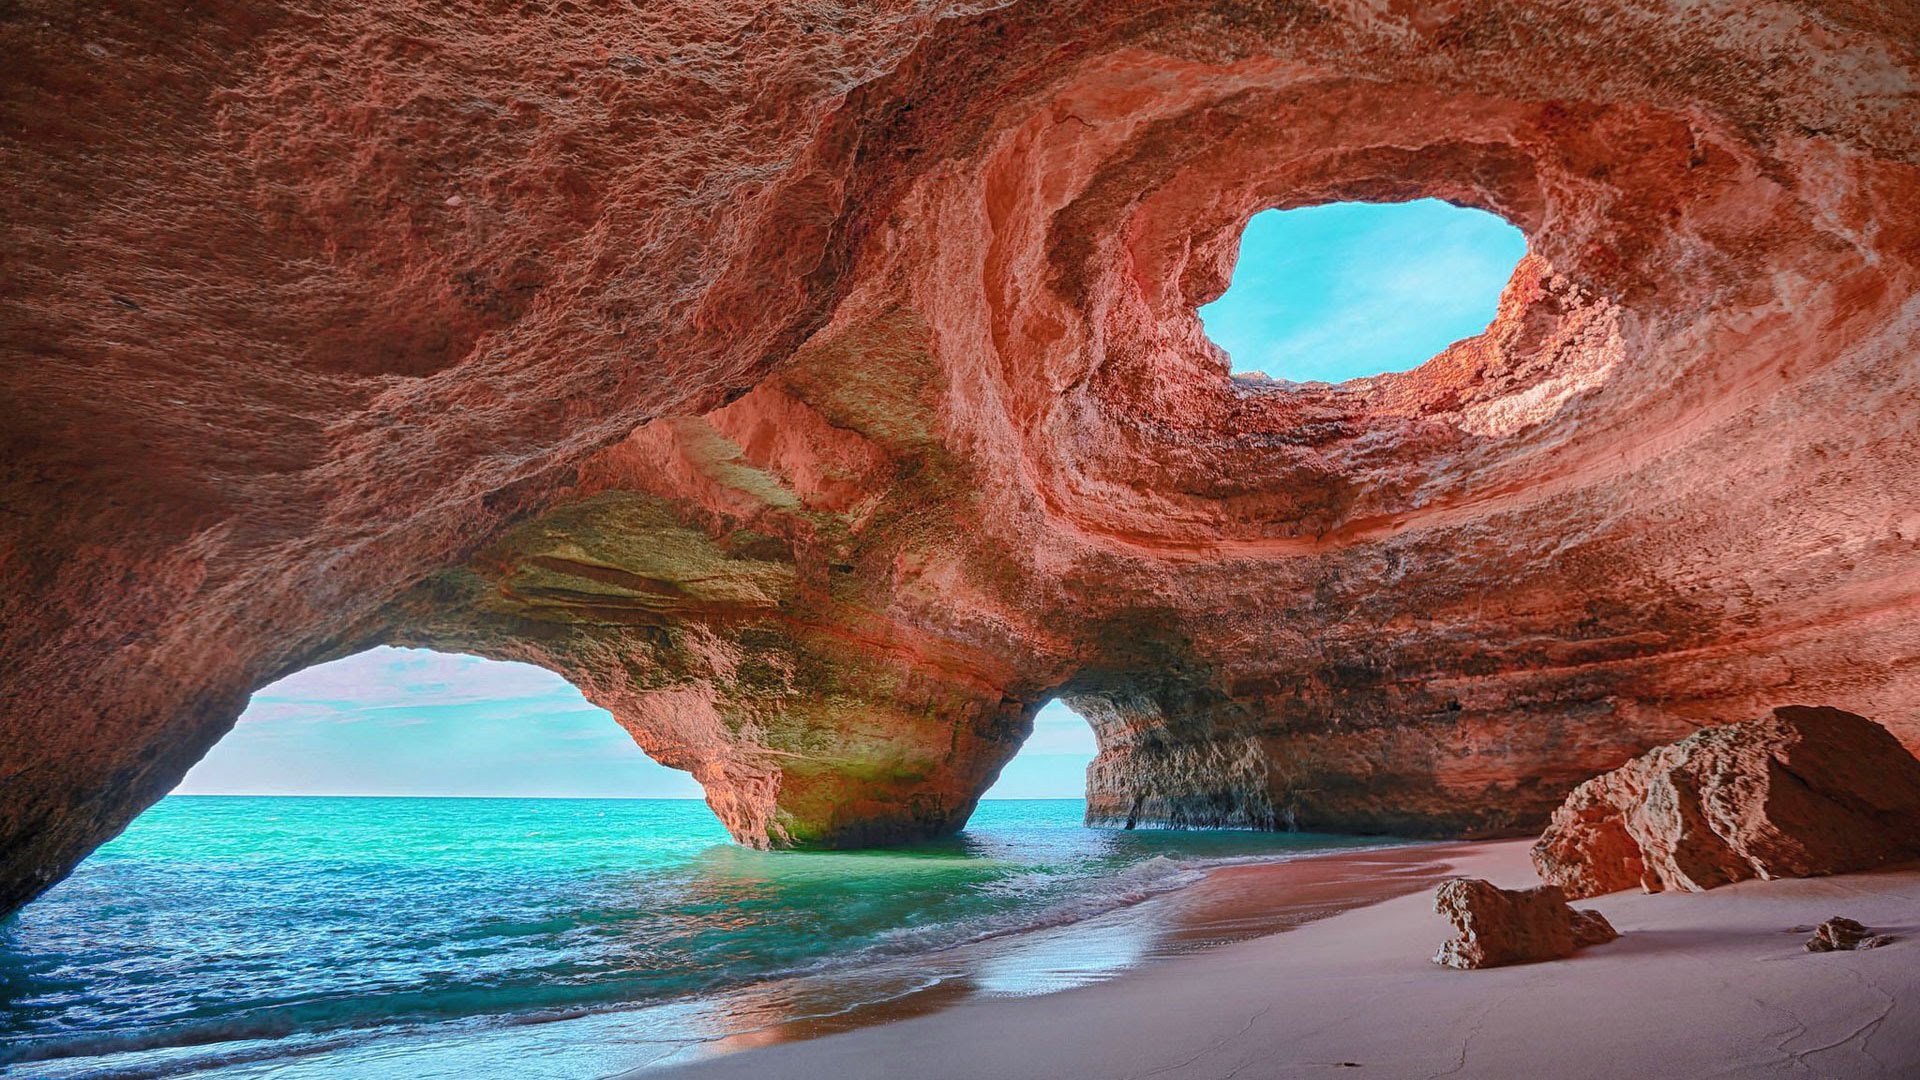 Algar de Benagil Portogallo spiagge più belle d'europa